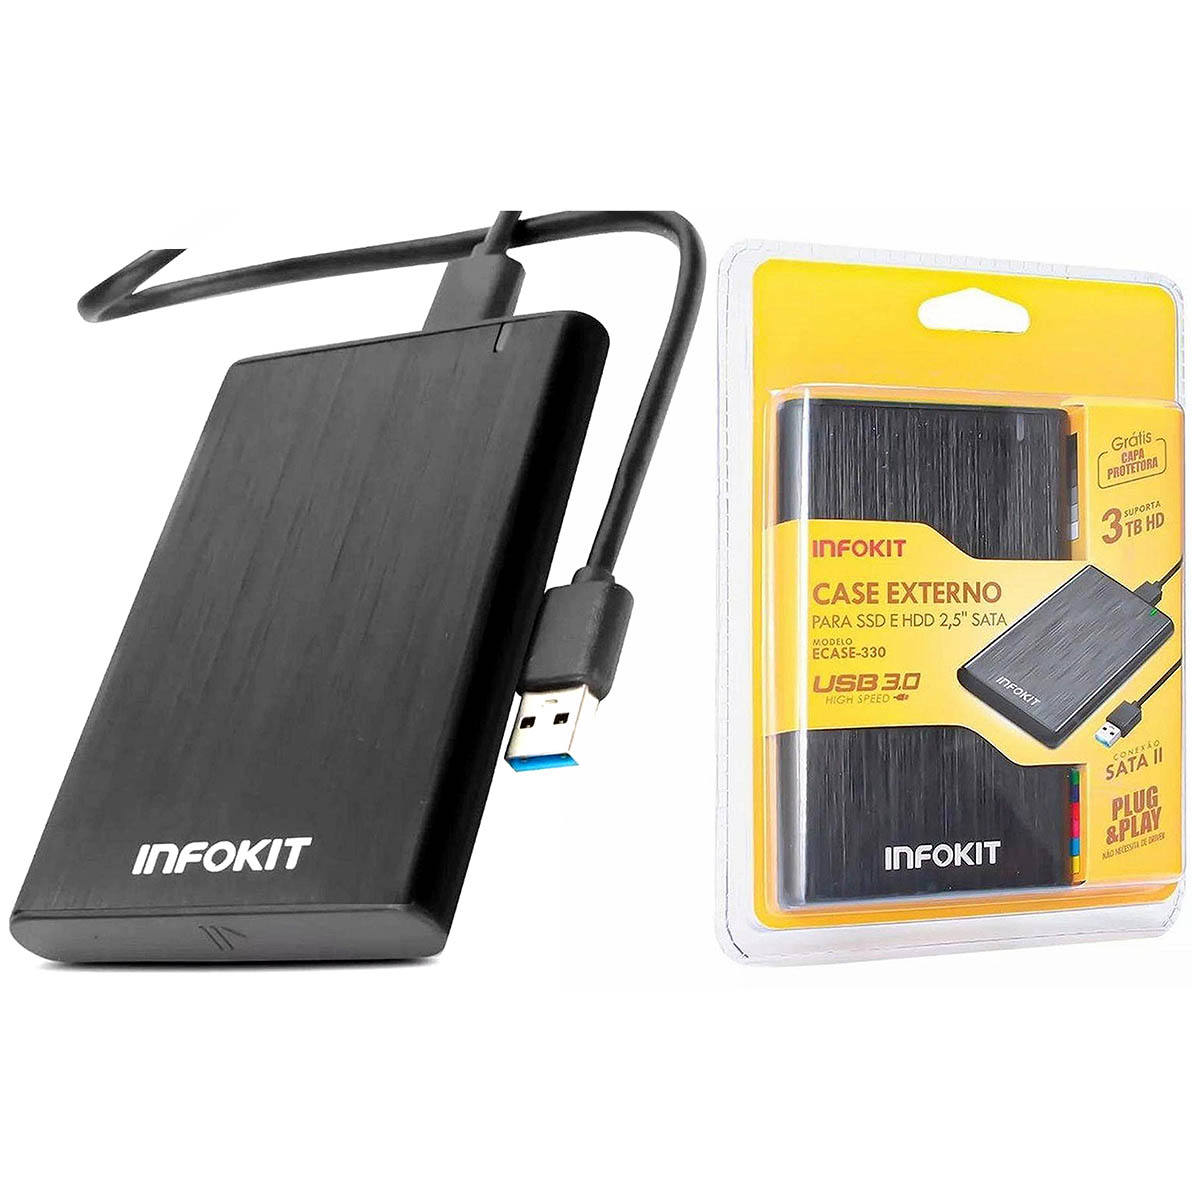 Case Externo para SSD e HDD SATA 2.5" USB 3.0 apoio UASP 3TB em Alumínio Escovado com Capa Protetora Infokit Ecase-330